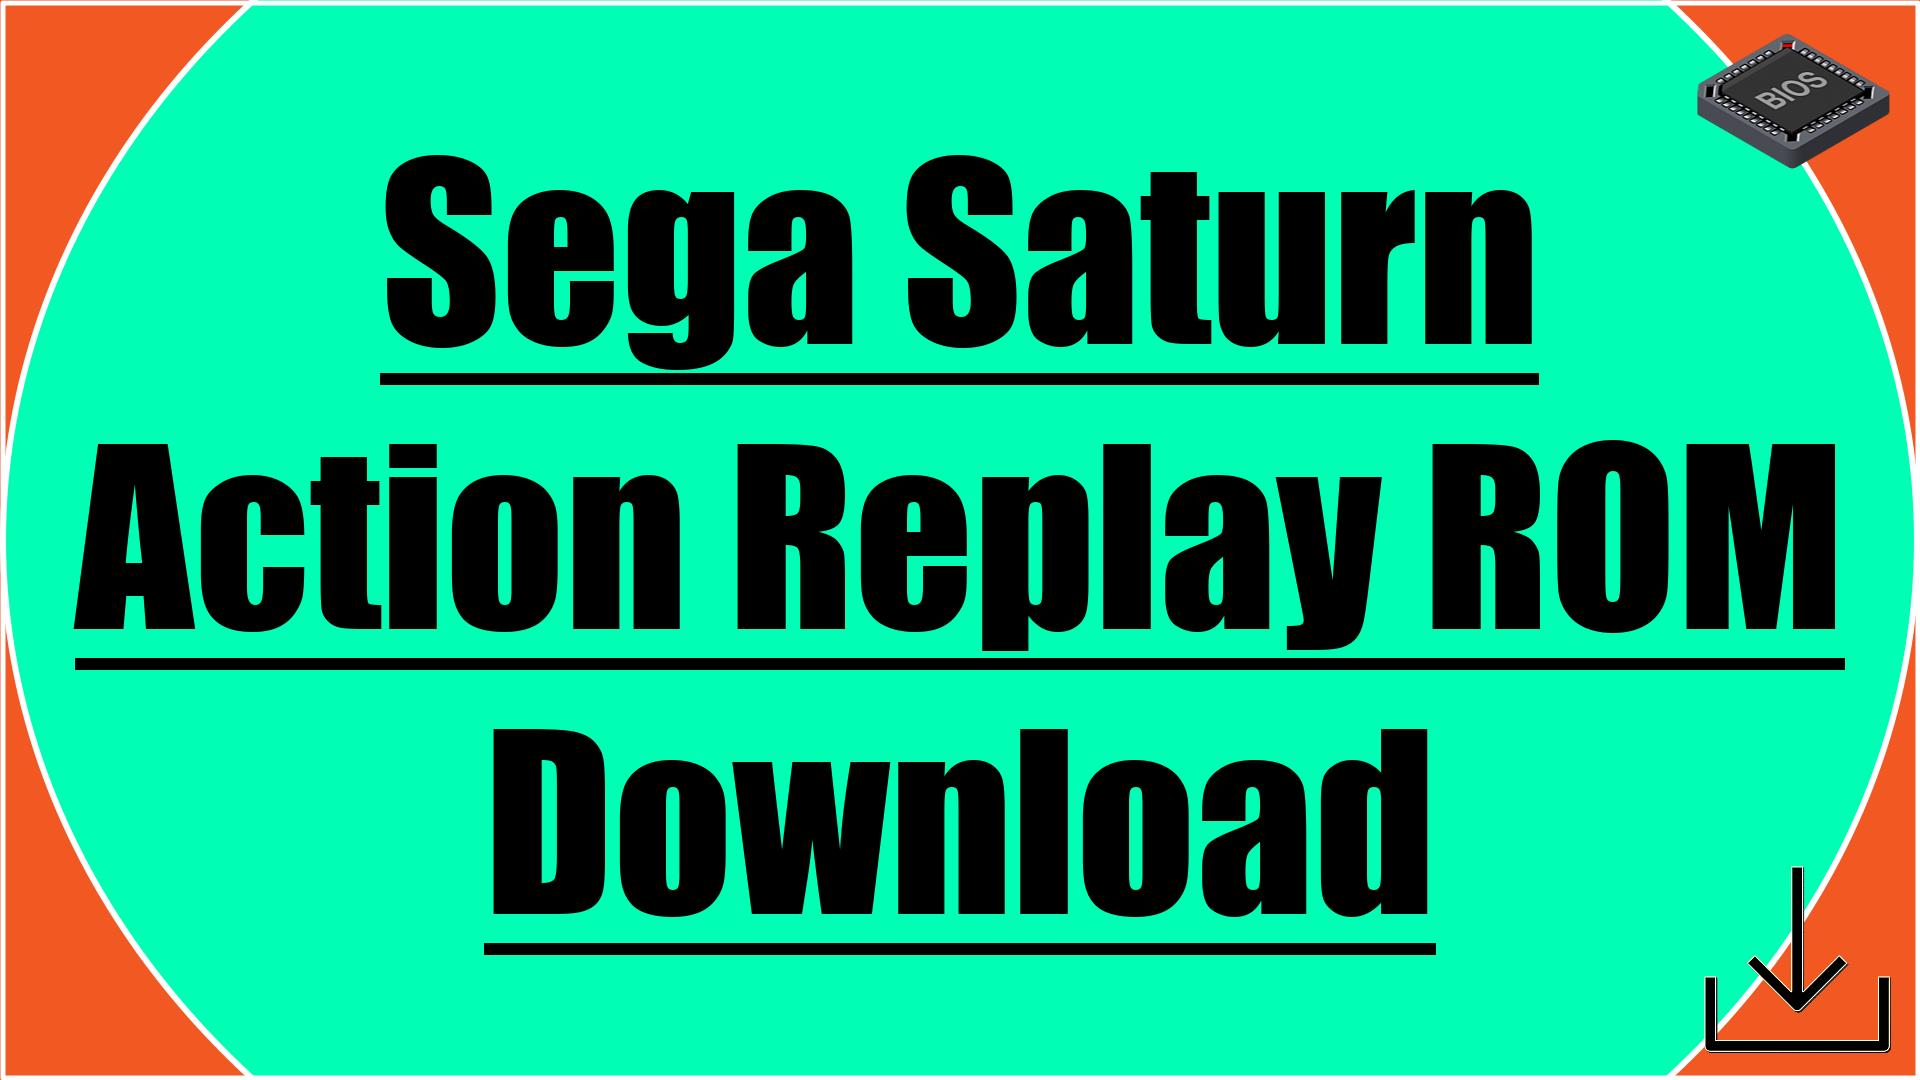 Sega Saturn Action Replay ROM Download